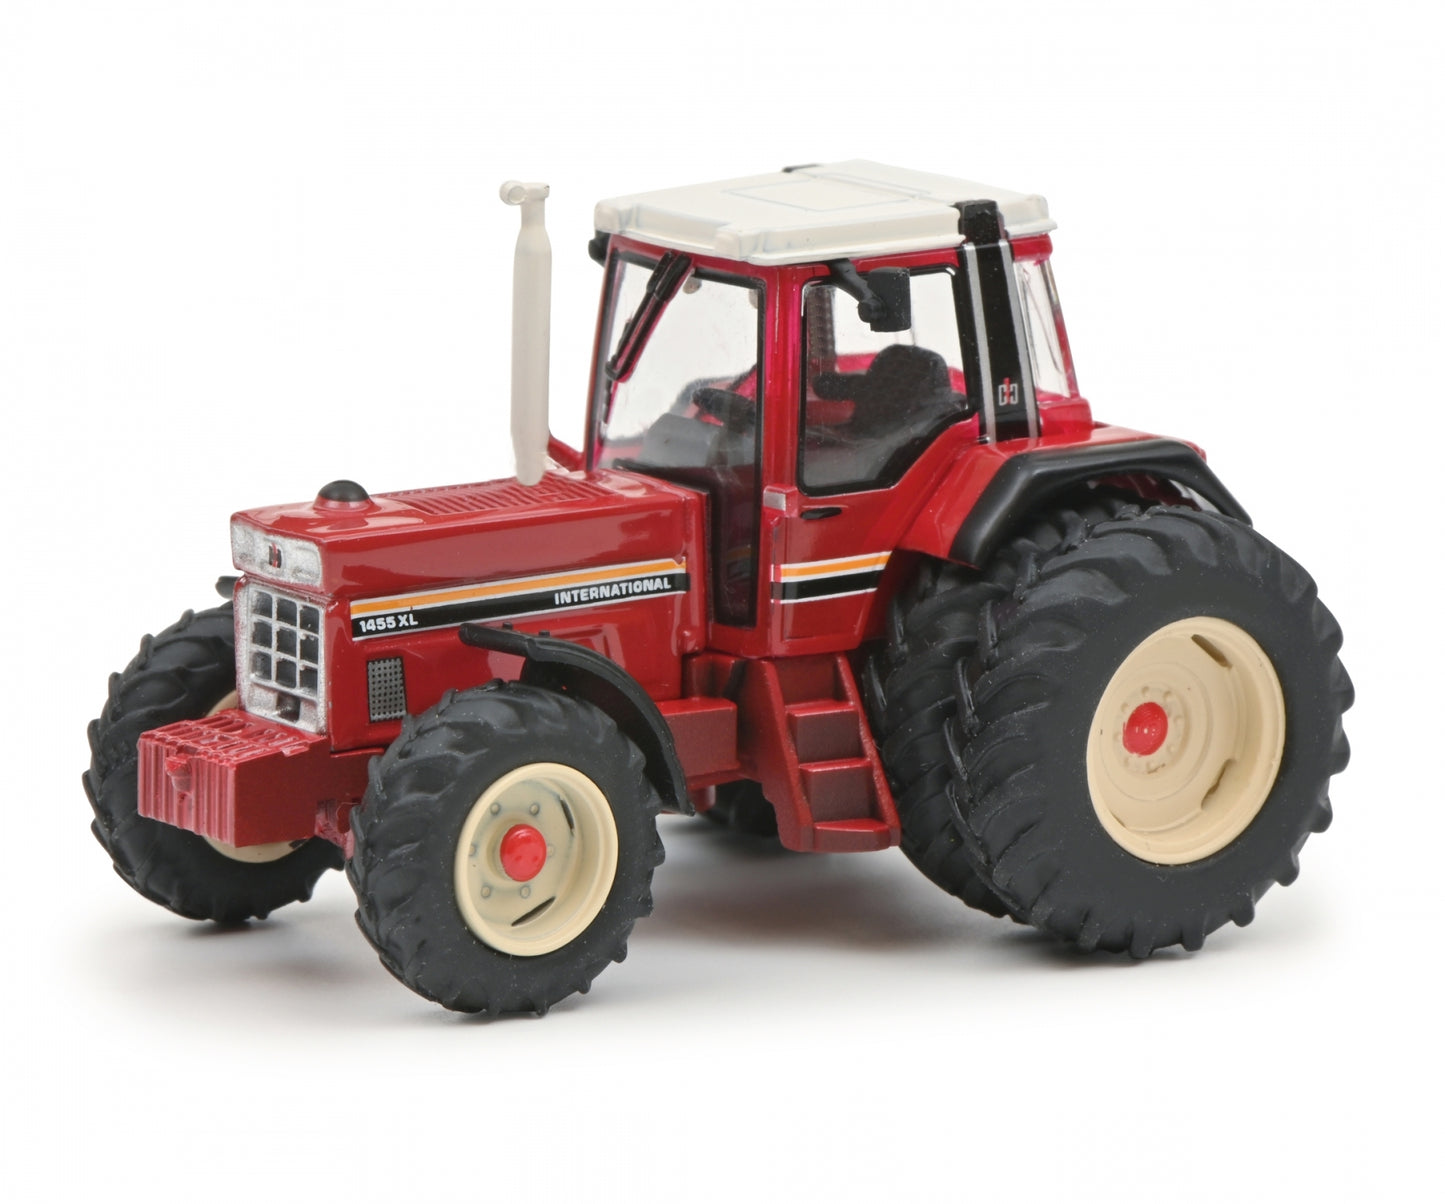 Schuco 1:87 IHC 1455 XL tractor 452669700